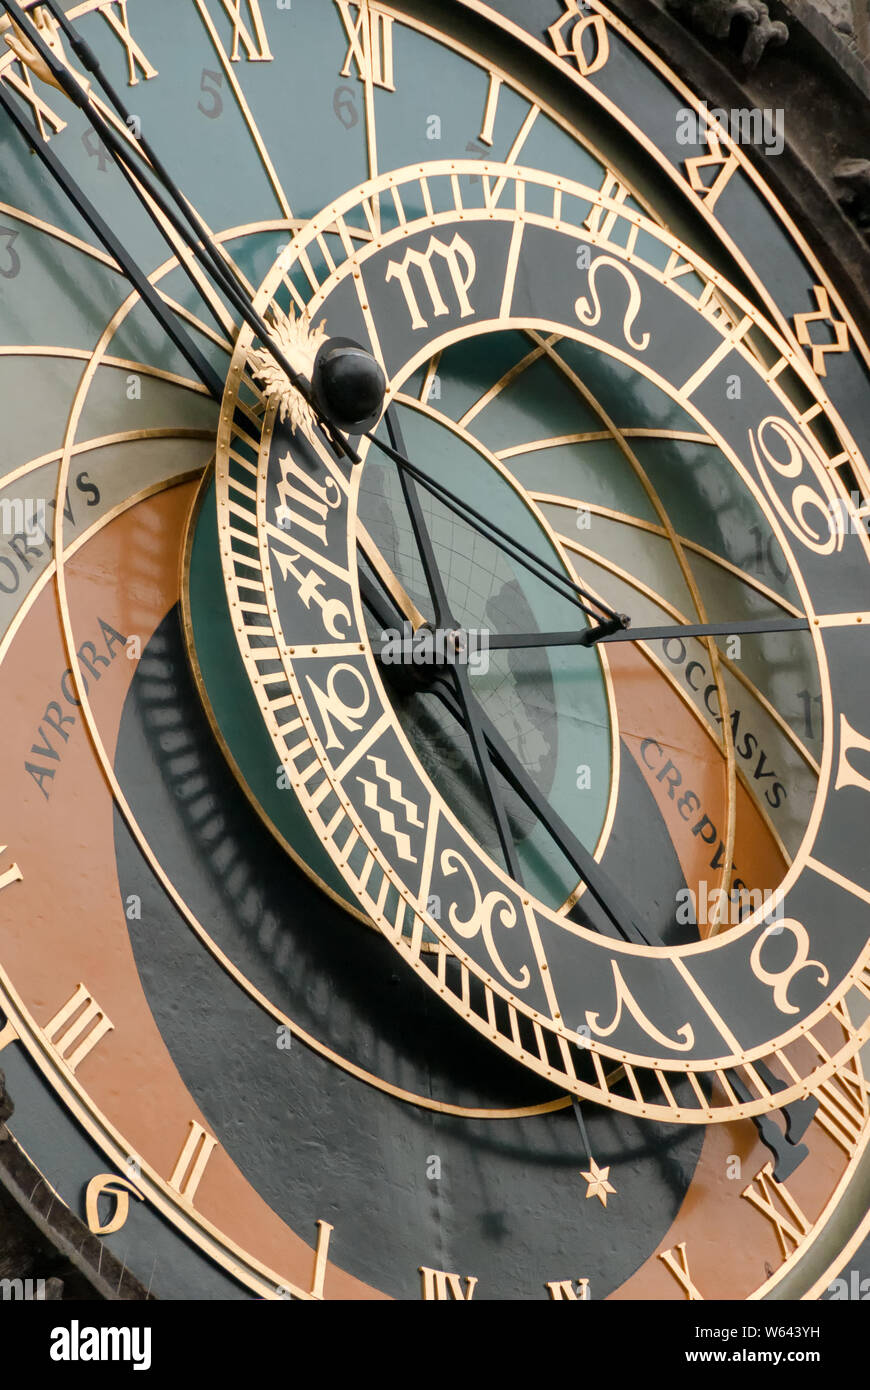 Closeup of the face of the Prague Astronomical Clock Stock Photo